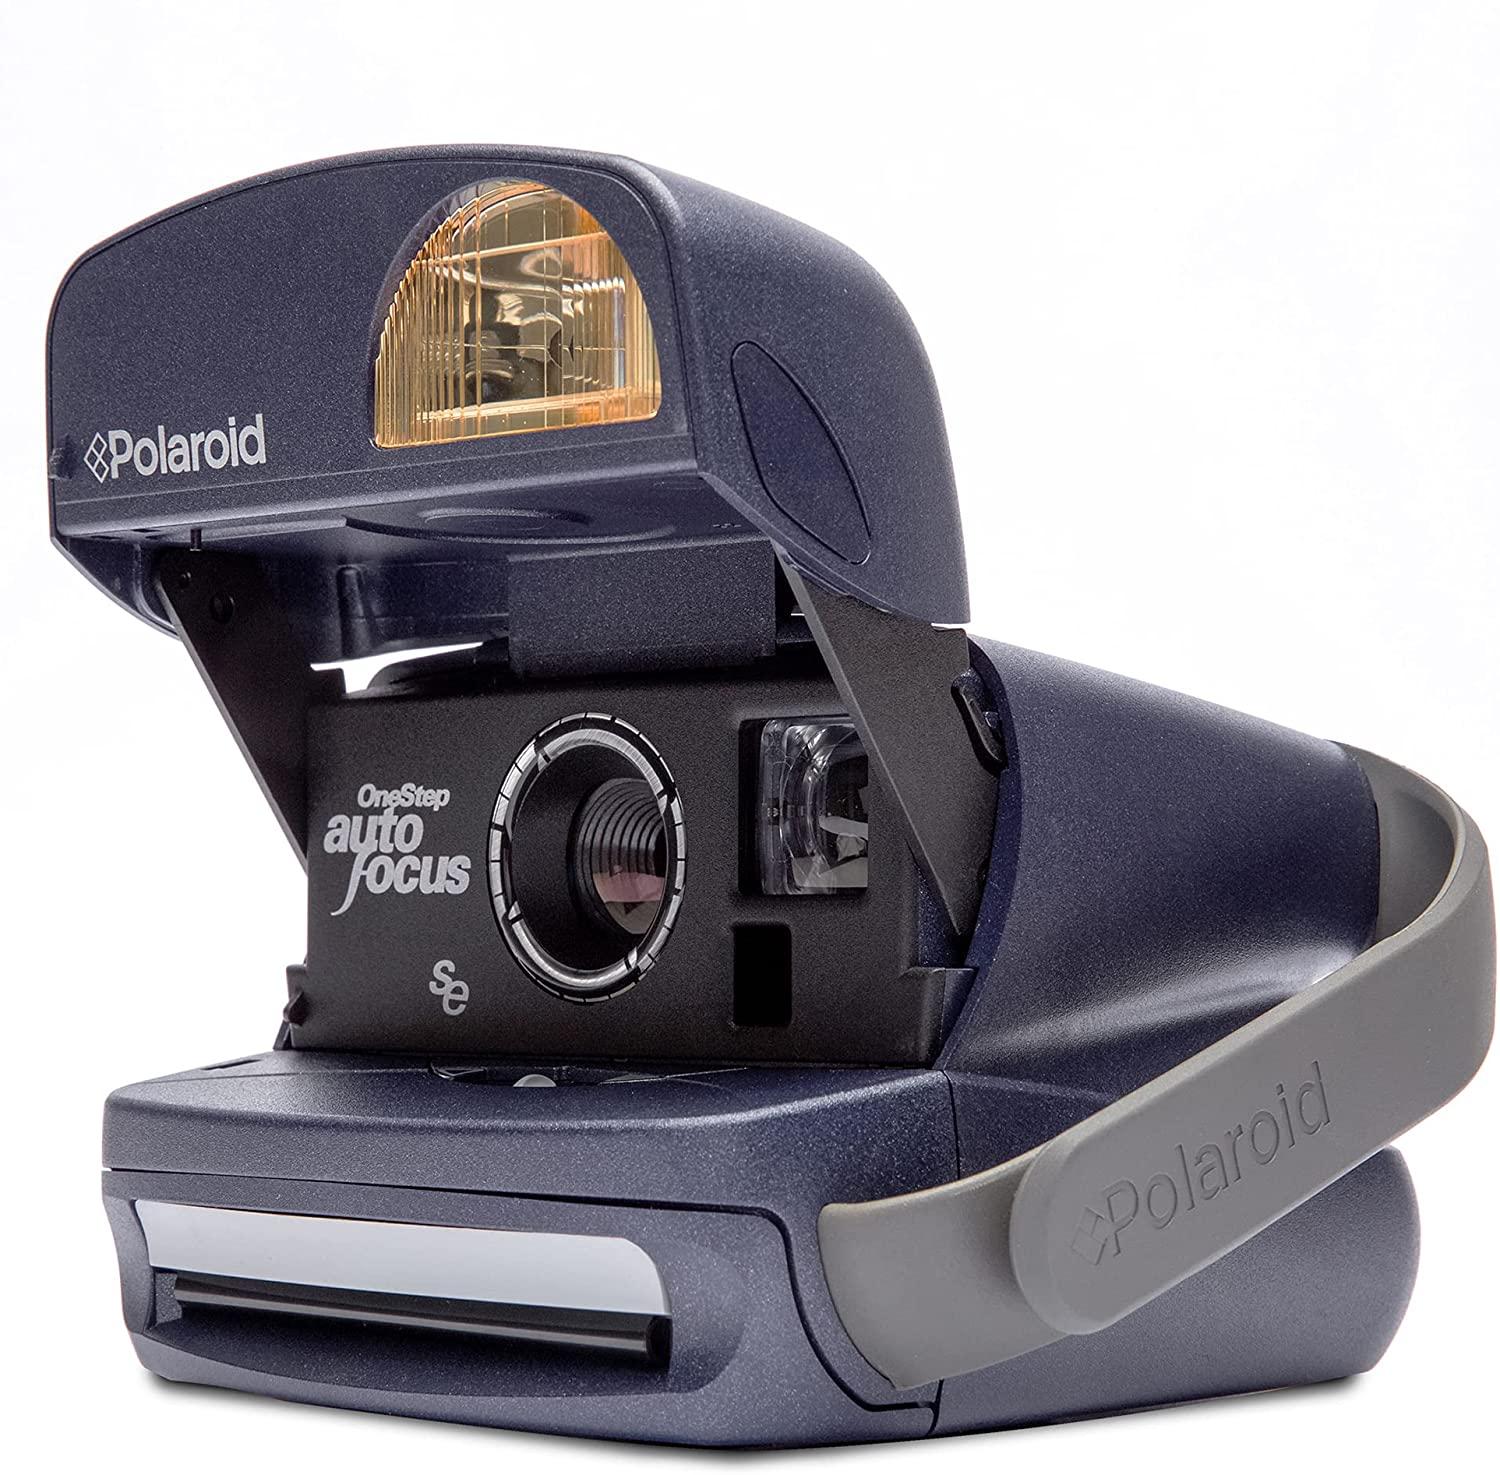 Polaroid 600 Camera for $99 Shipped